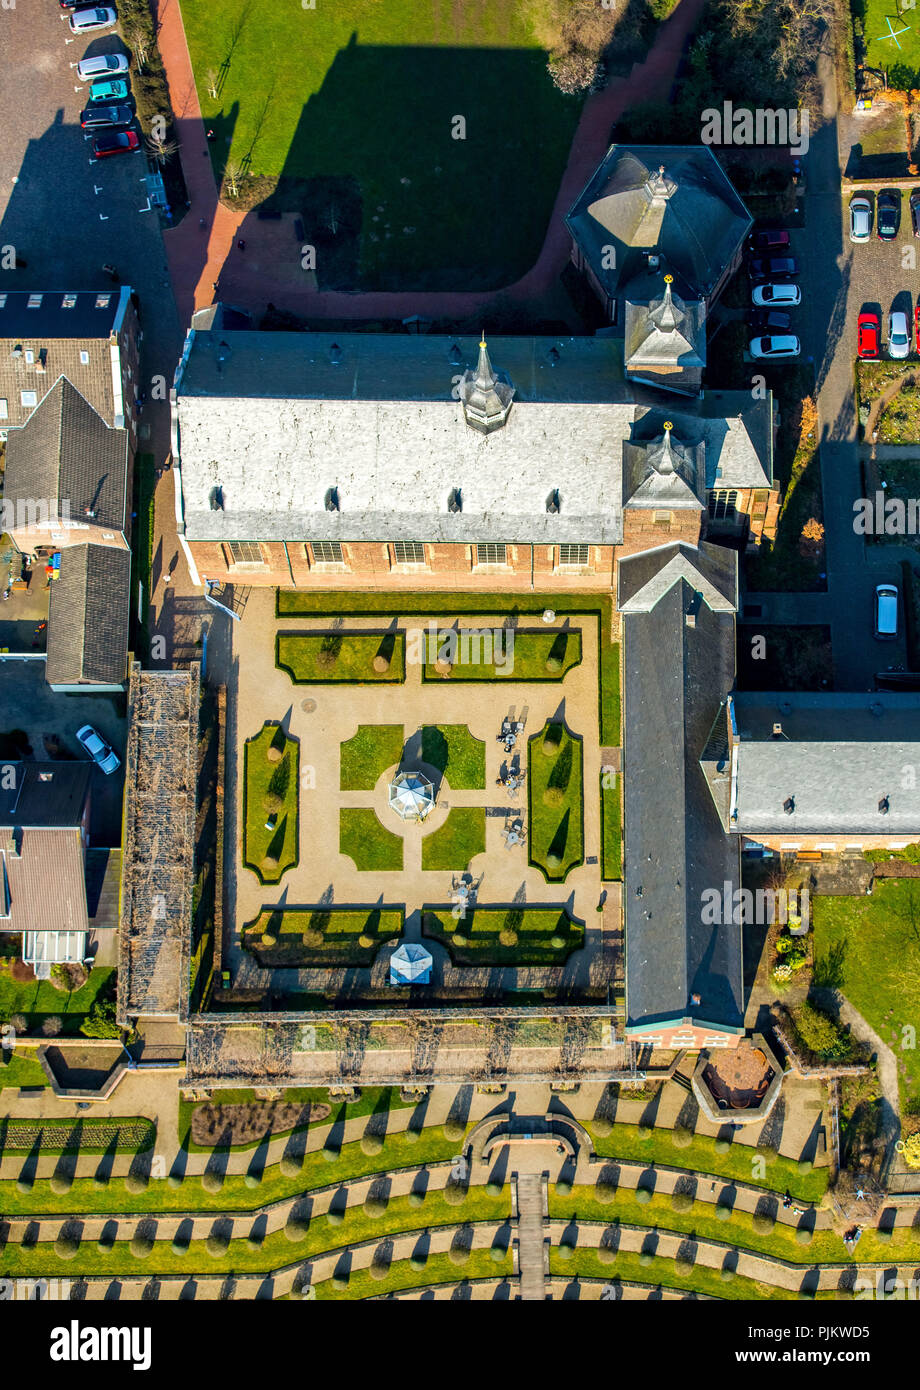 Centre spirituel et culturel Kloster Kamp avec jardin en terrasses et jardin jardin baroque, art, Kamp-Lintfort, Bas-rhin, Rhénanie du Nord-Westphalie, Allemagne Banque D'Images